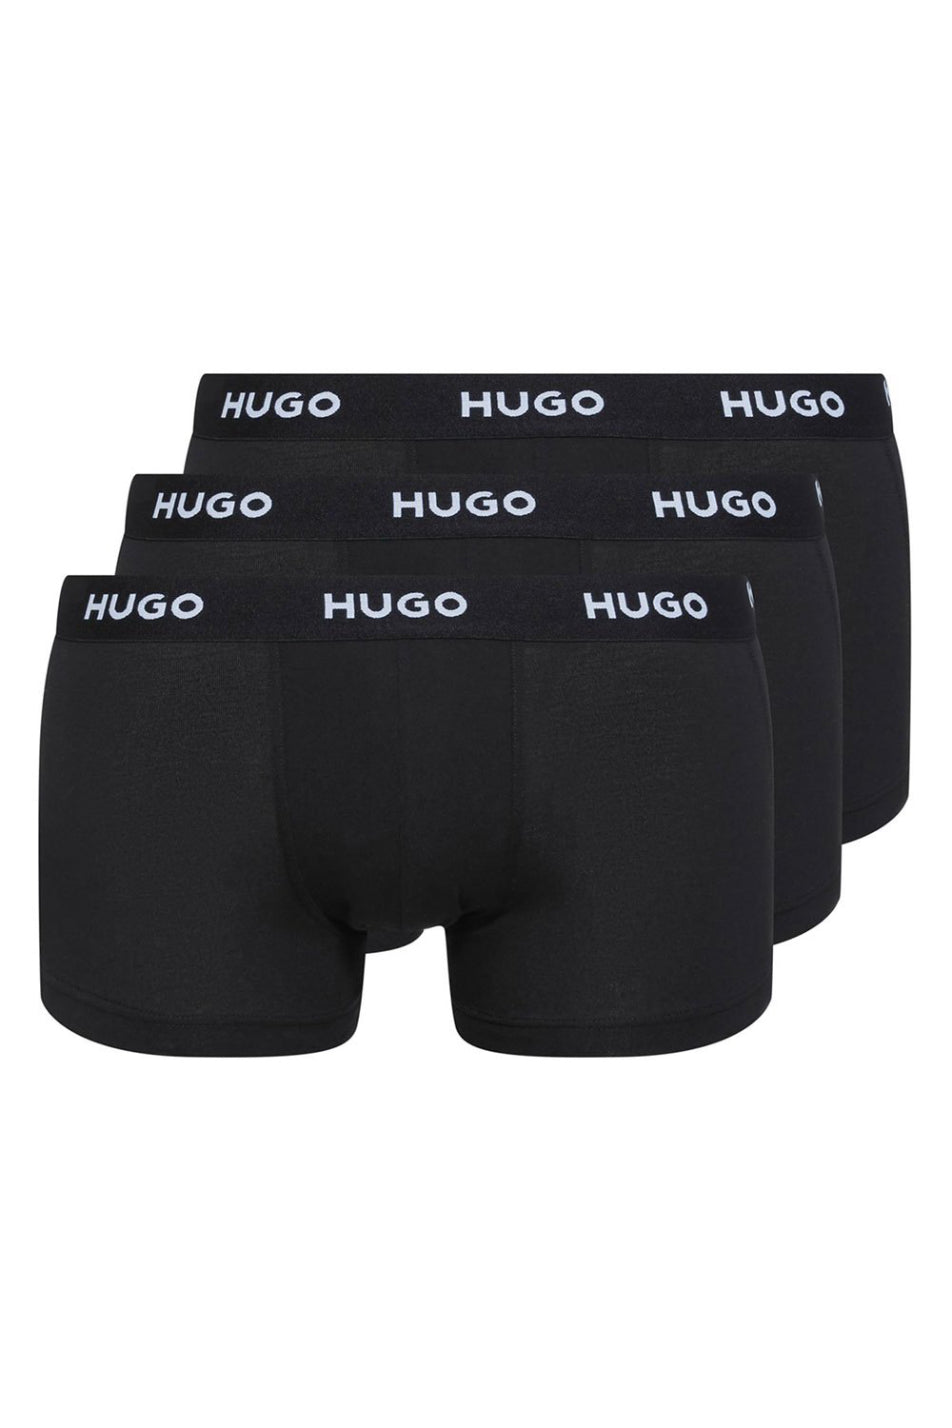 Hugo 3 Pack Men's Trunk